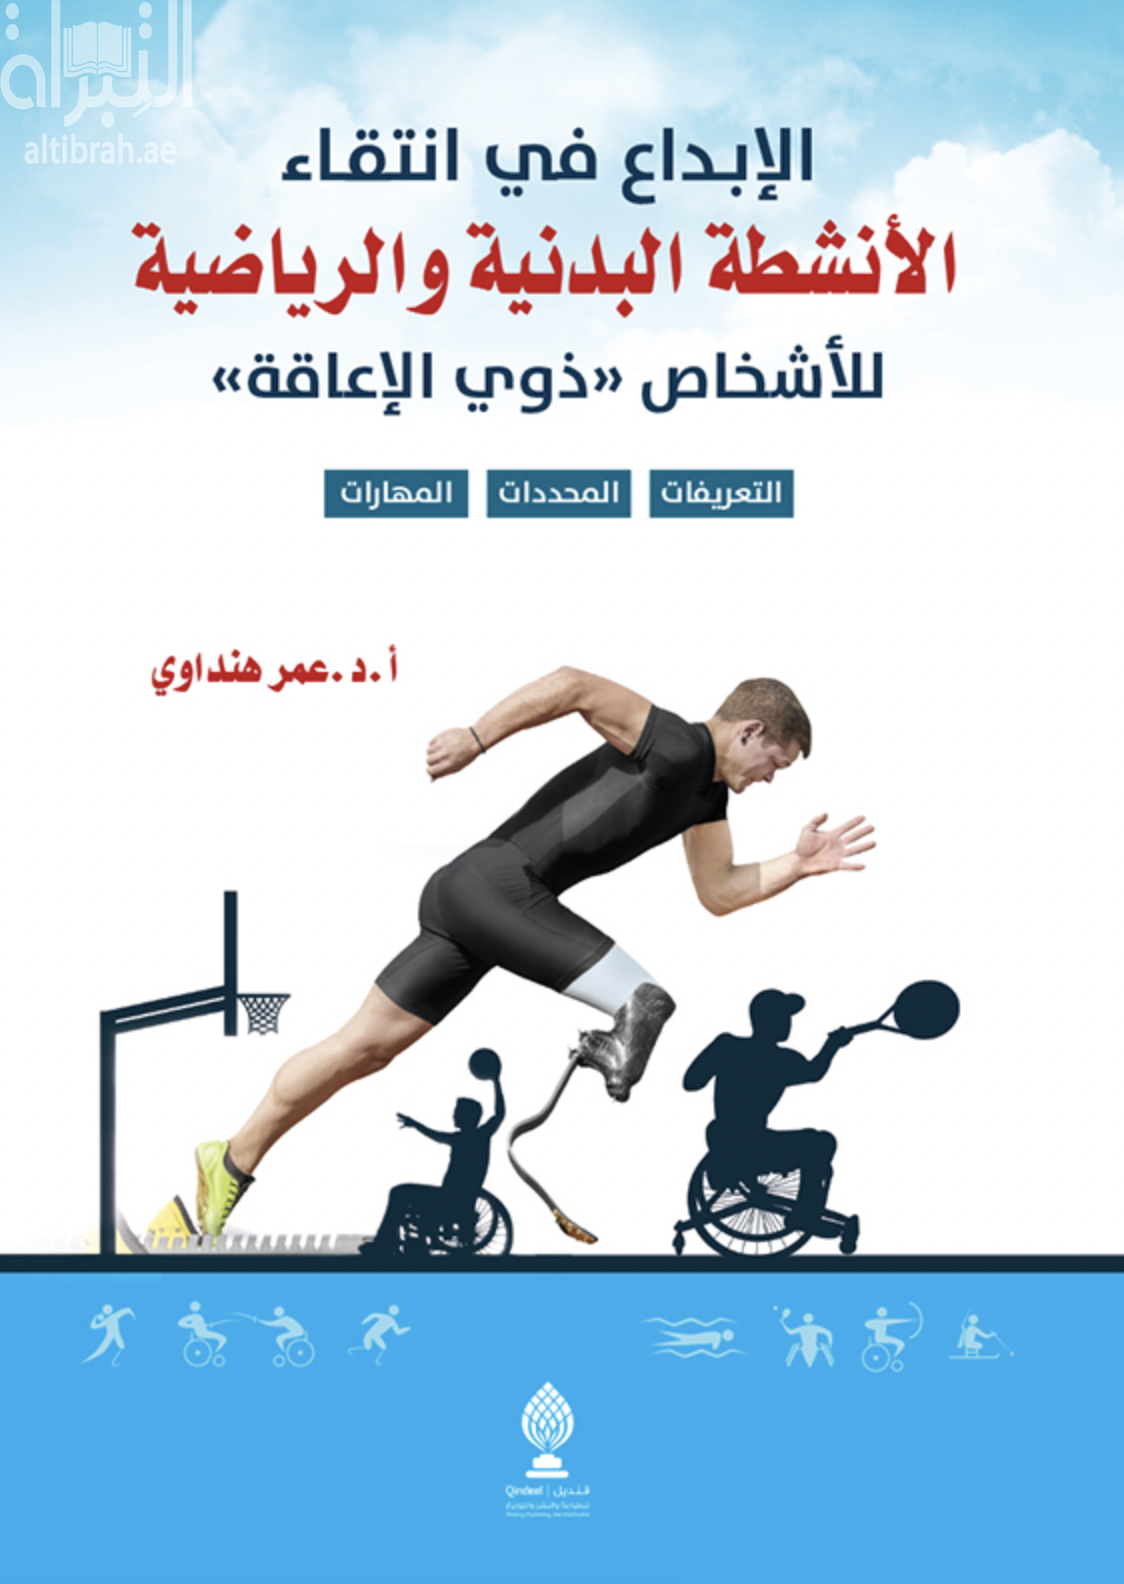 الإبداع في انتقاء الأنشطة البدنية والرياضية للأشخاص ذوي الإعاقة